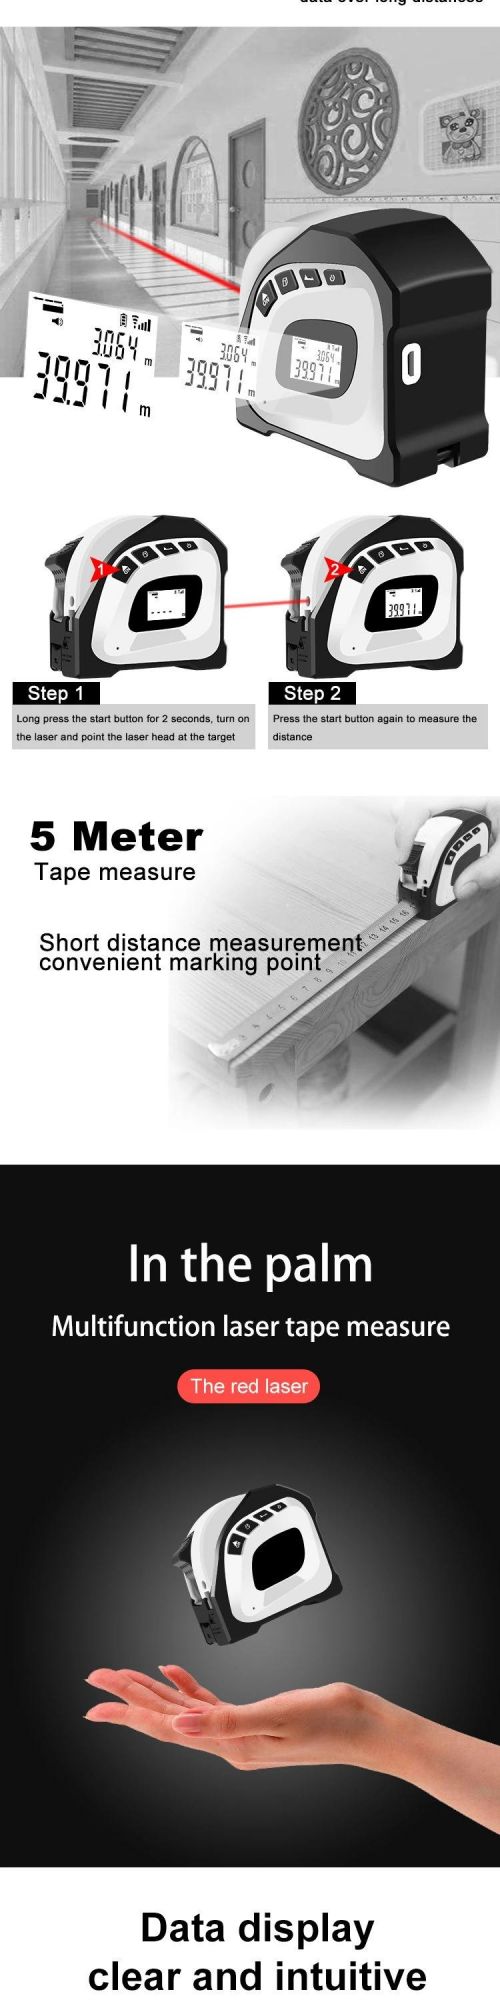 40m Infrared Digital Laser Distance Finder Tape Measure